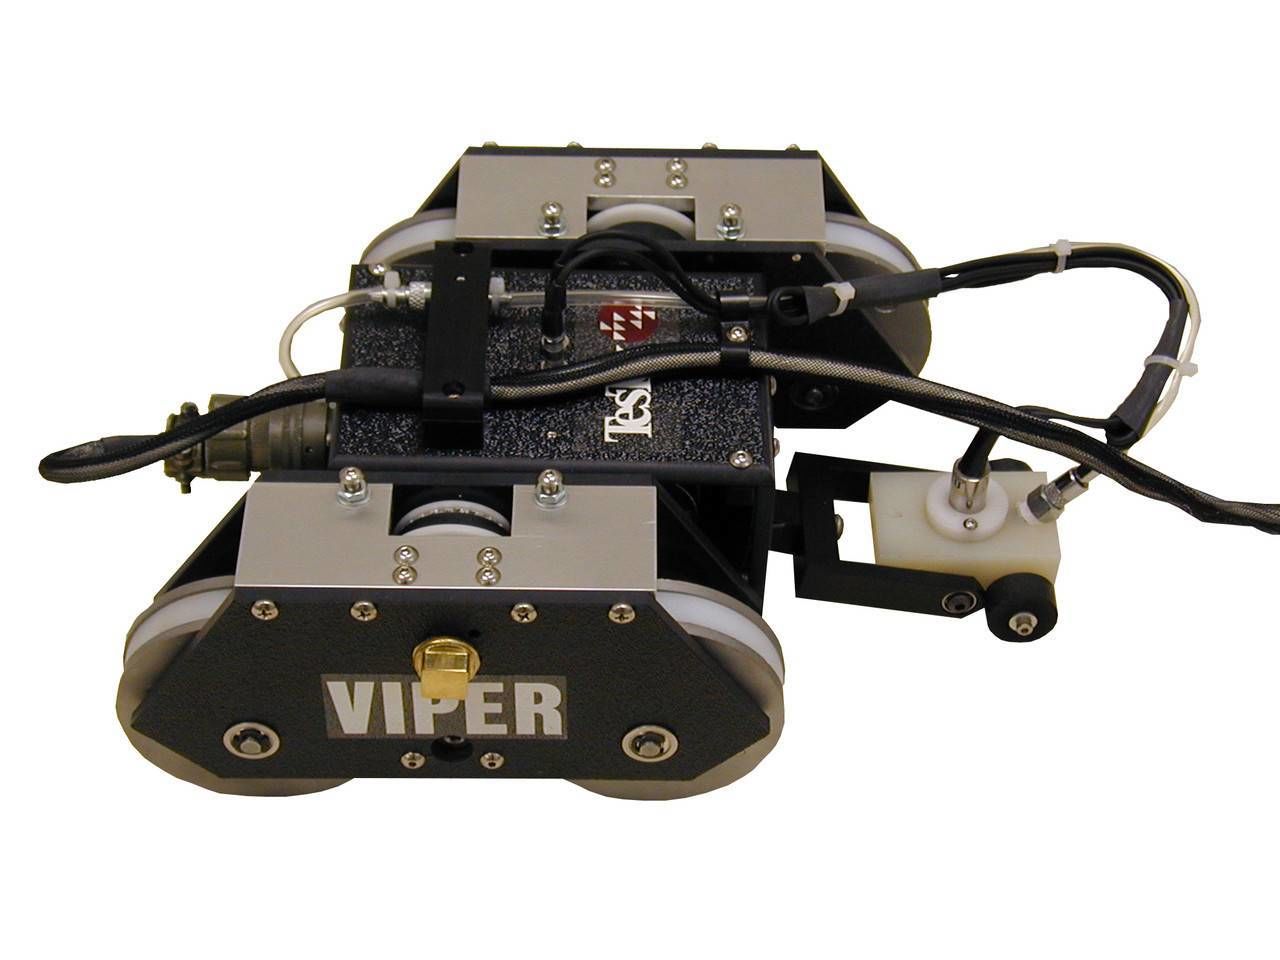 Кроулер для автоматизированного контроля вертикальных поверхностей TesTex Viper в НКПРОМ.РУ купить – НКПРОМ.РУ